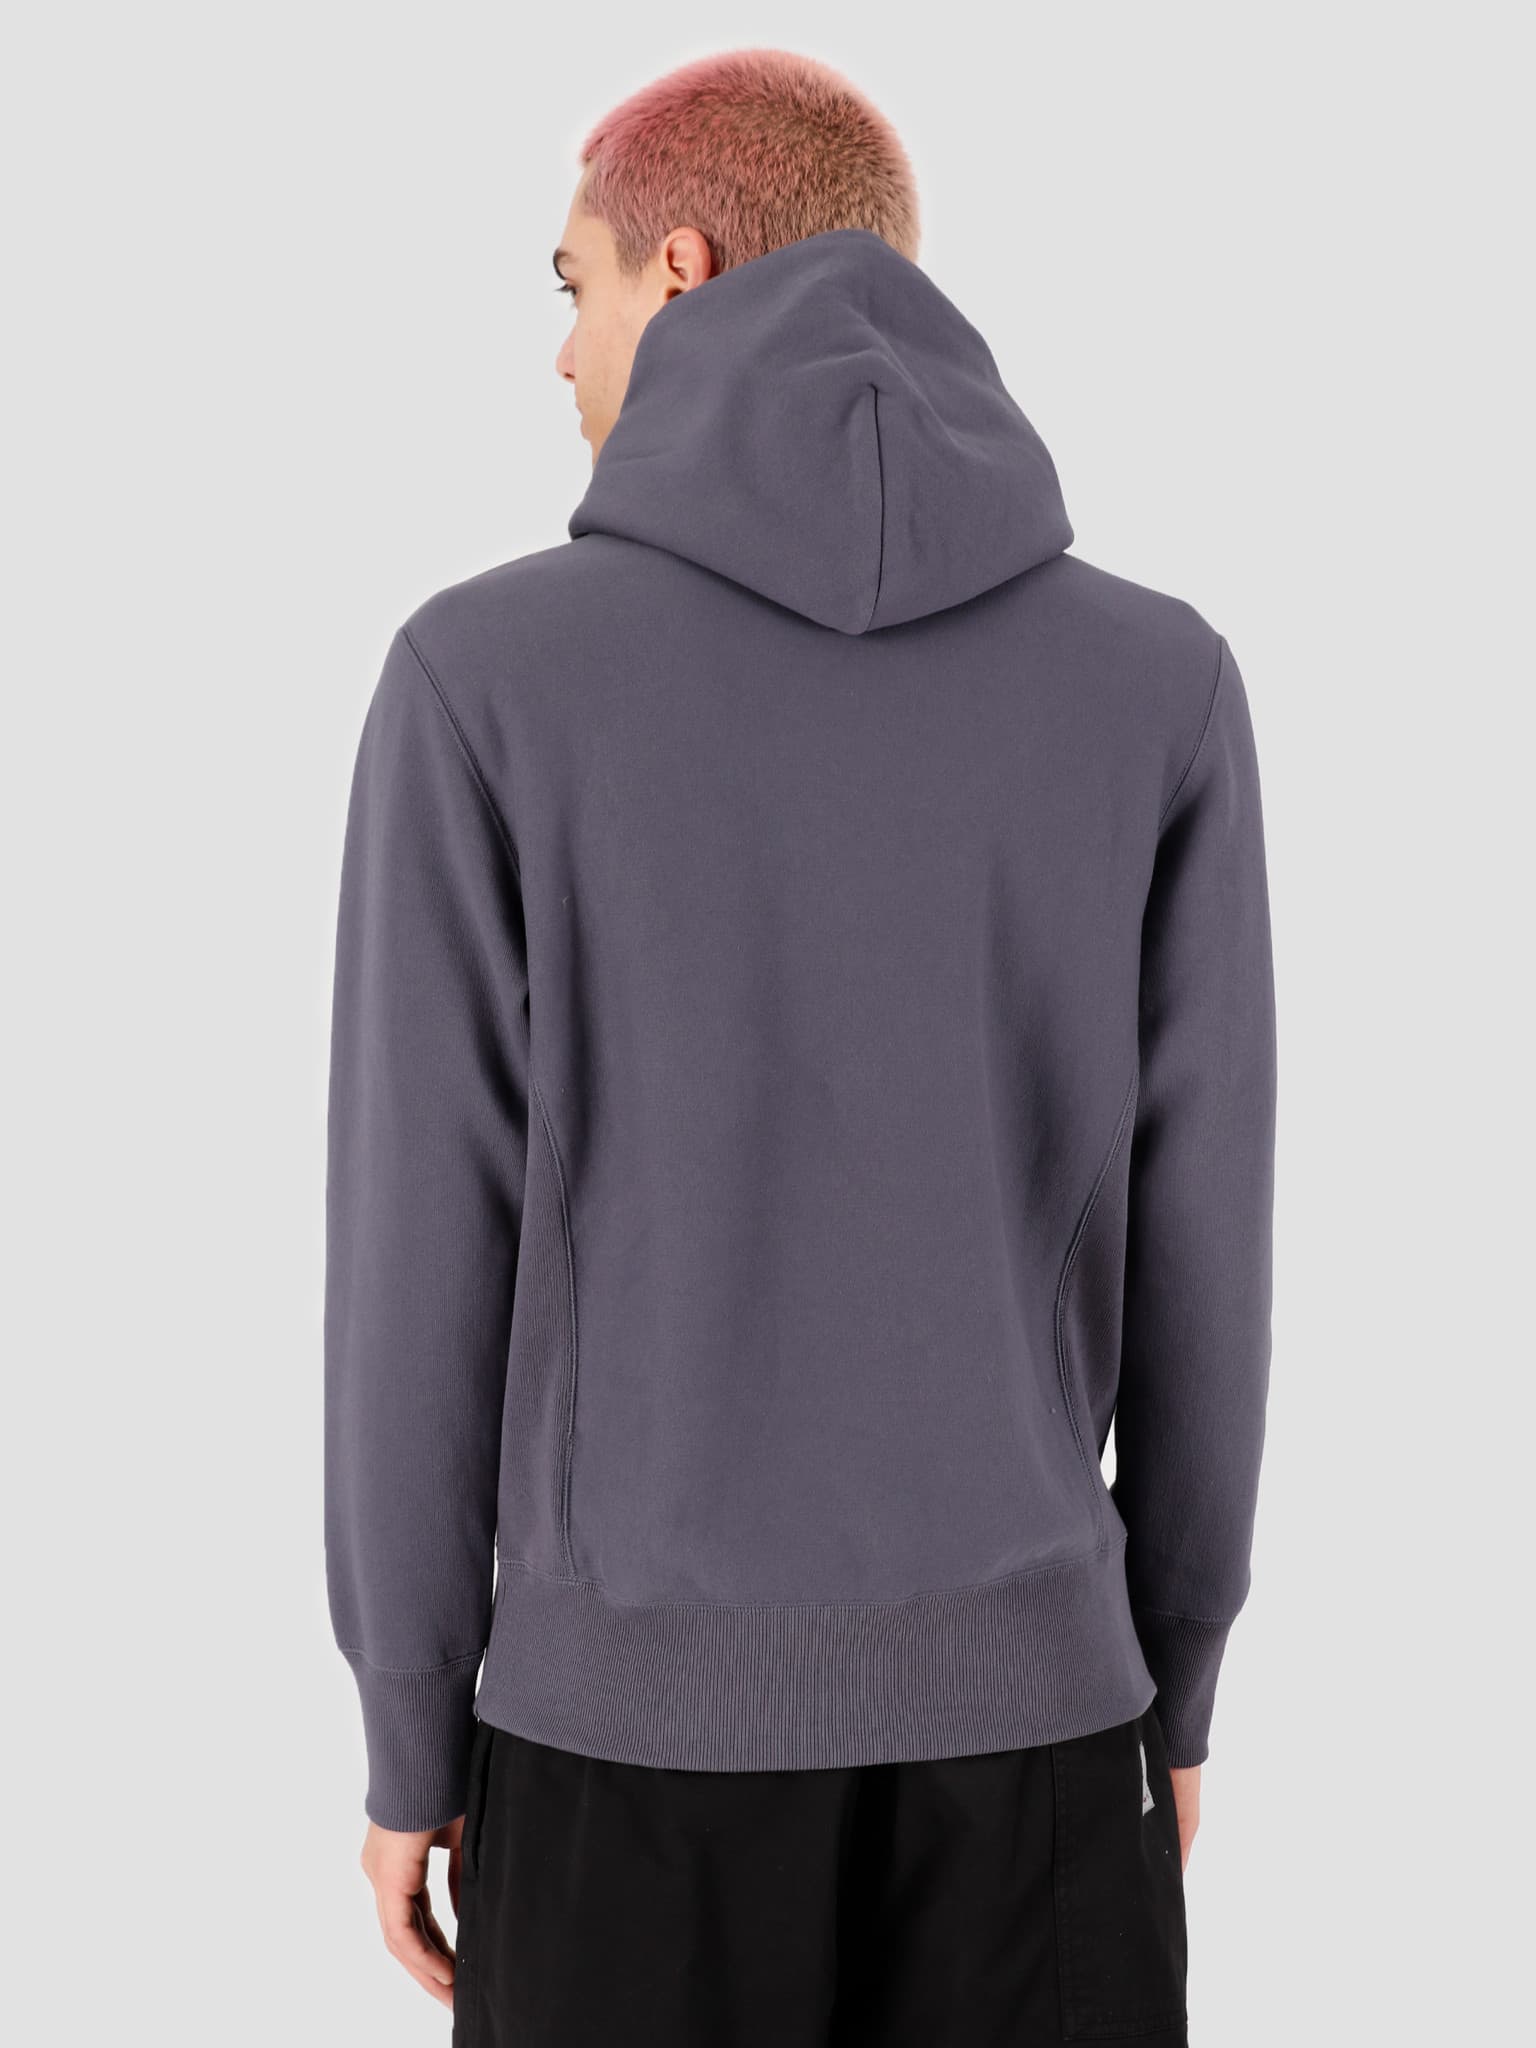 Hooded Sweatshirt Grey CHC 214675-BS514